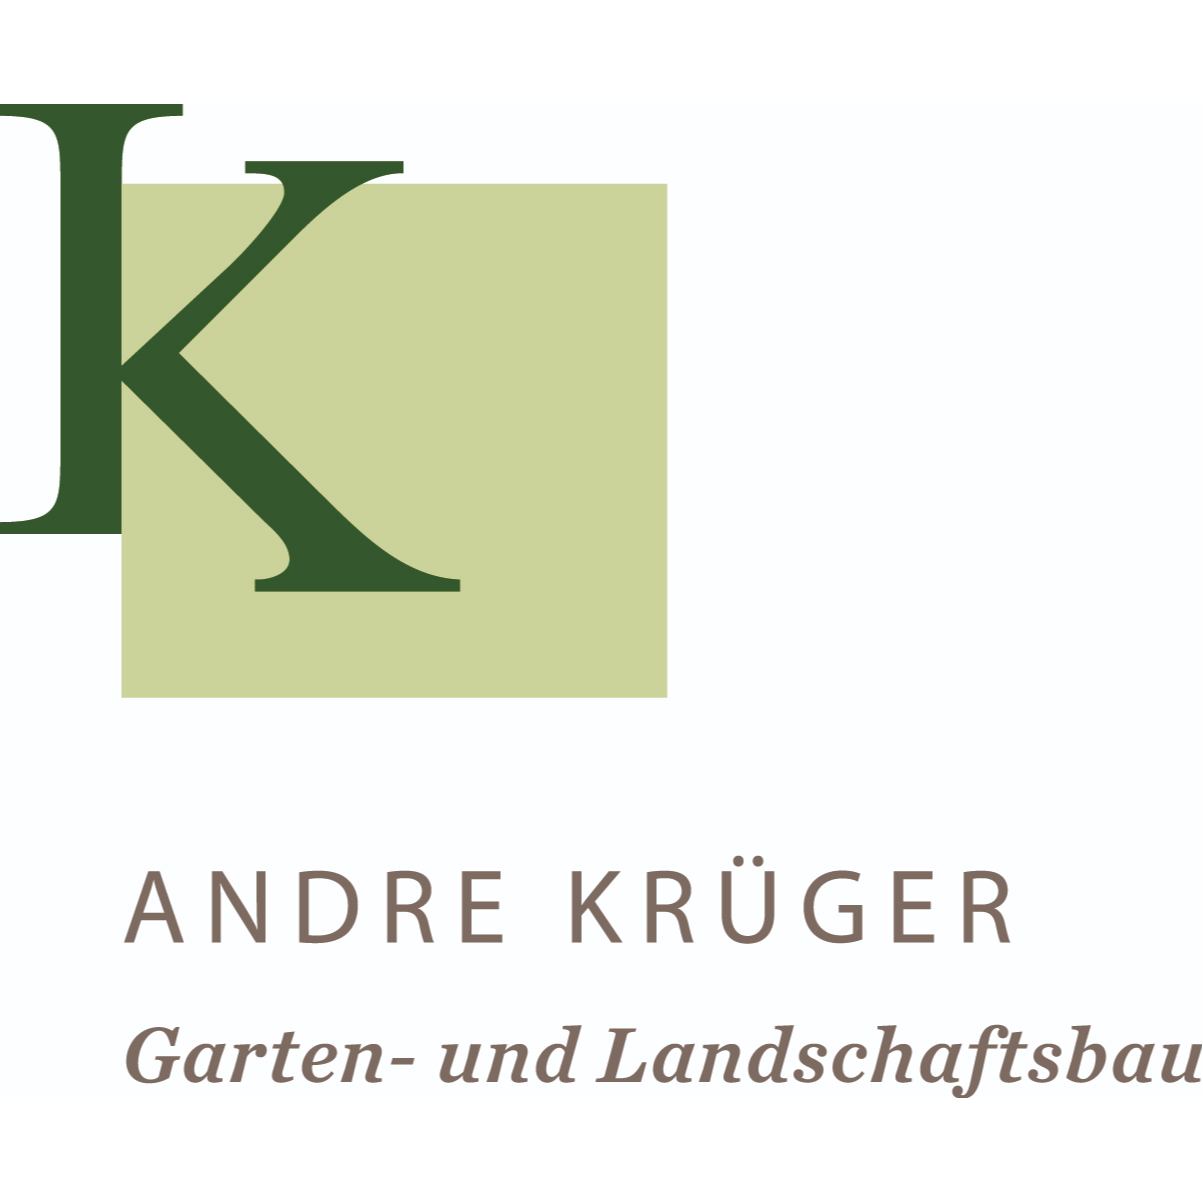 Andre Krüger Gartenanlagen in Vlotho - Logo